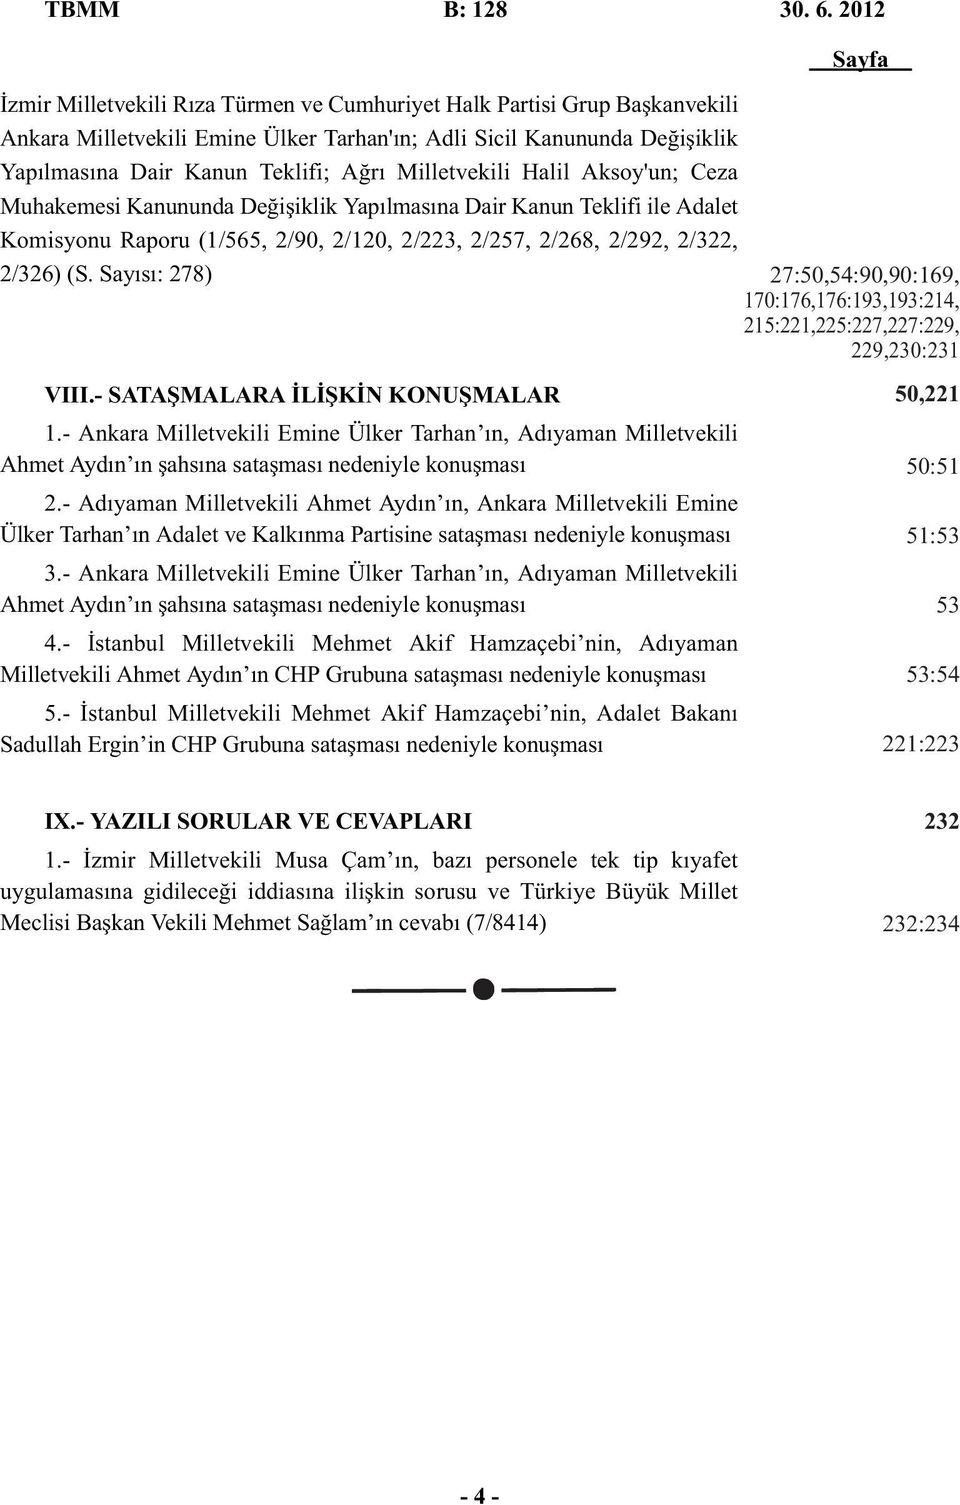 Milletvekili Halil Aksoy'un; Ceza Muhakemesi Kanununda Değişiklik Yapılmasına Dair Kanun Teklifi ile Adalet Komisyonu Raporu (1/565, 2/90, 2/120, 2/223, 2/257, 2/268, 2/292, 2/322, 2/326) (S.